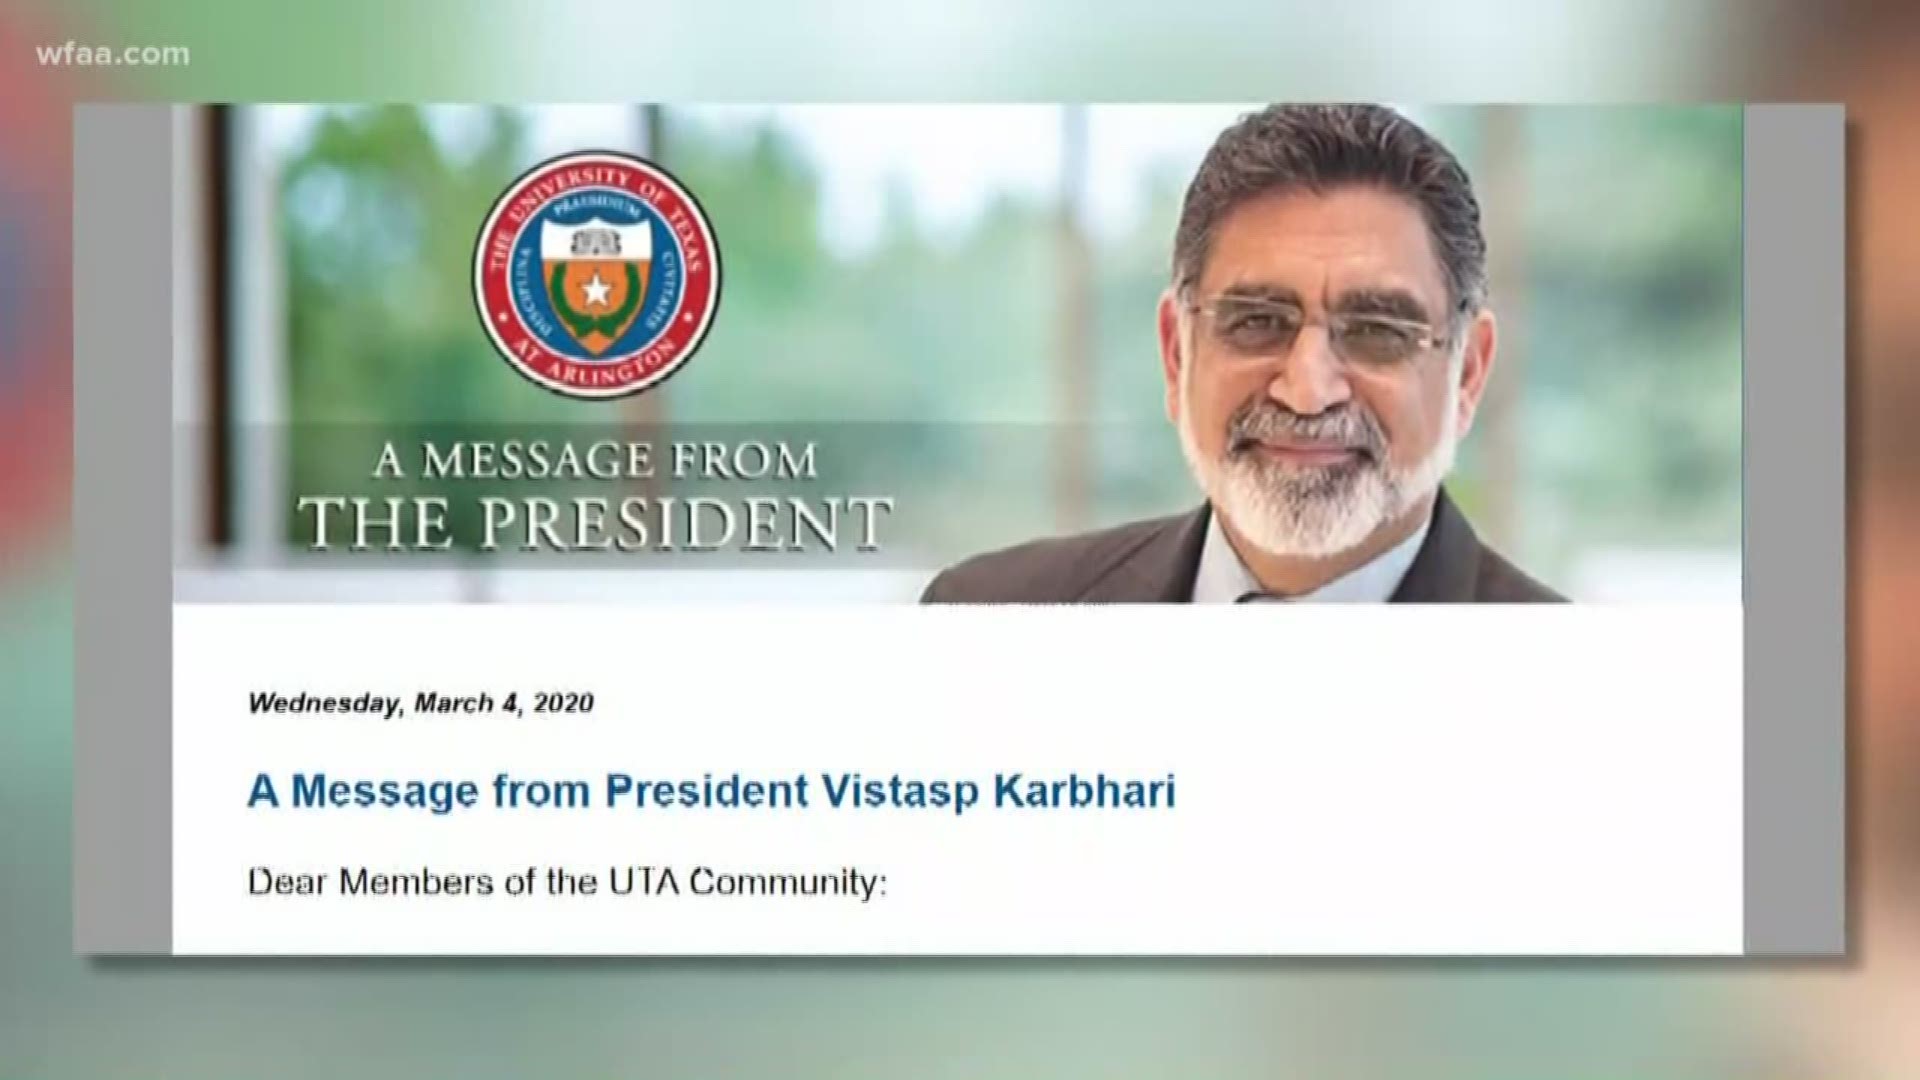 President Vistasp Karbhari took office in June 2013 as UTA’s eighth president.